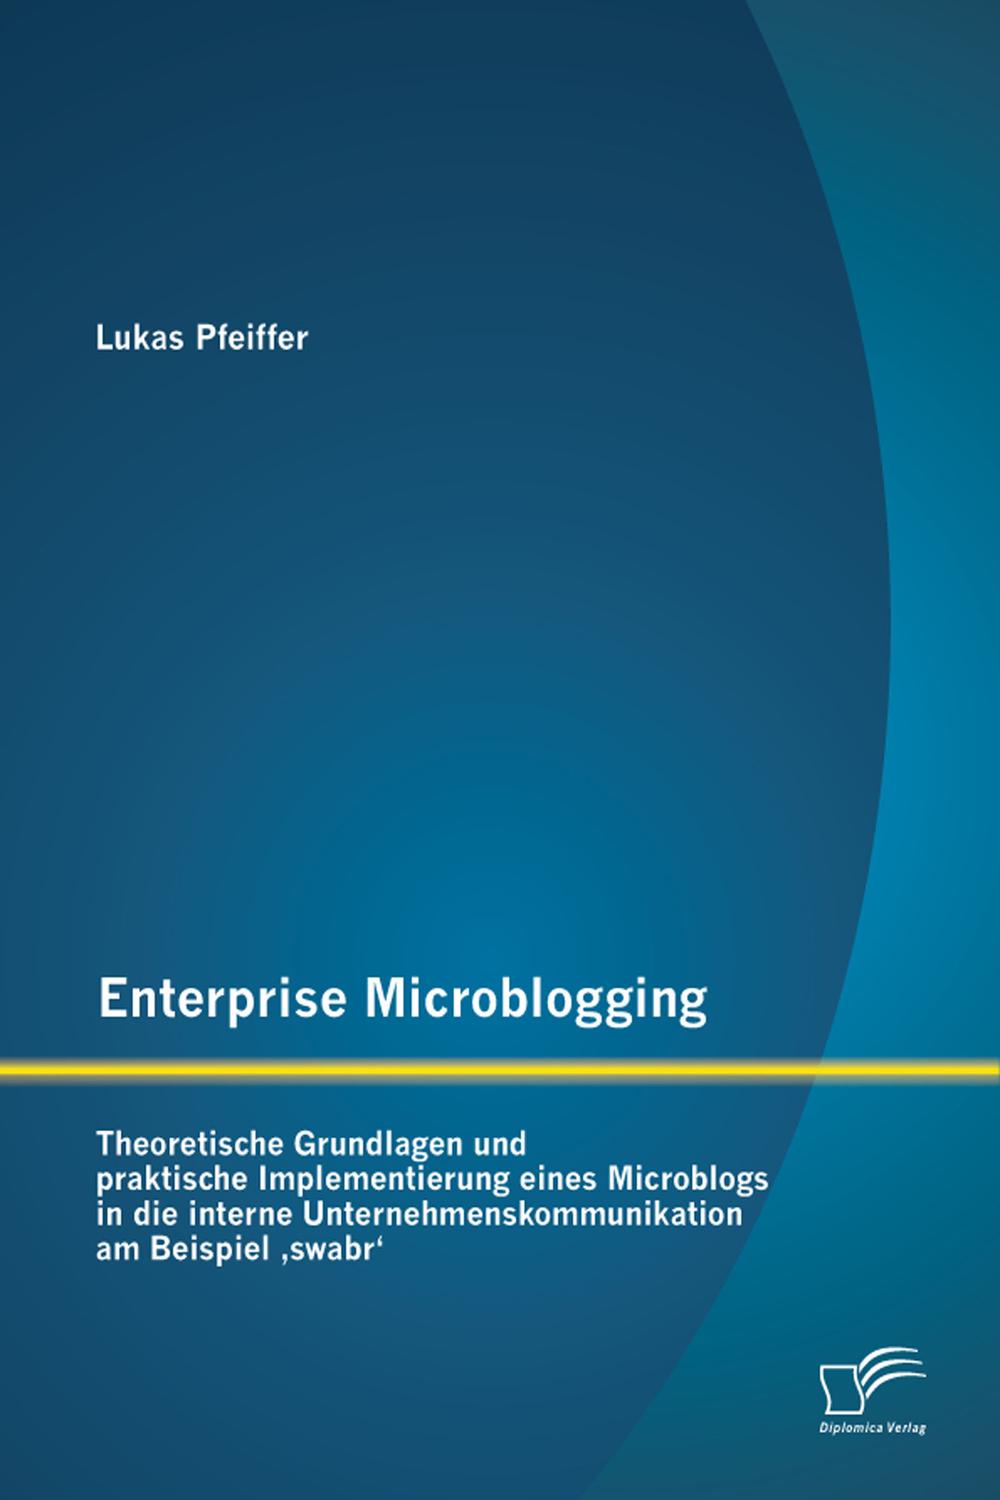 Enterprise Microblogging: Theoretische Grundlagen und praktische Implementierung eines Microblogs in die interne Unternehmenskommunikation am Beispiel 'swabr' - Lukas Pfeiffer